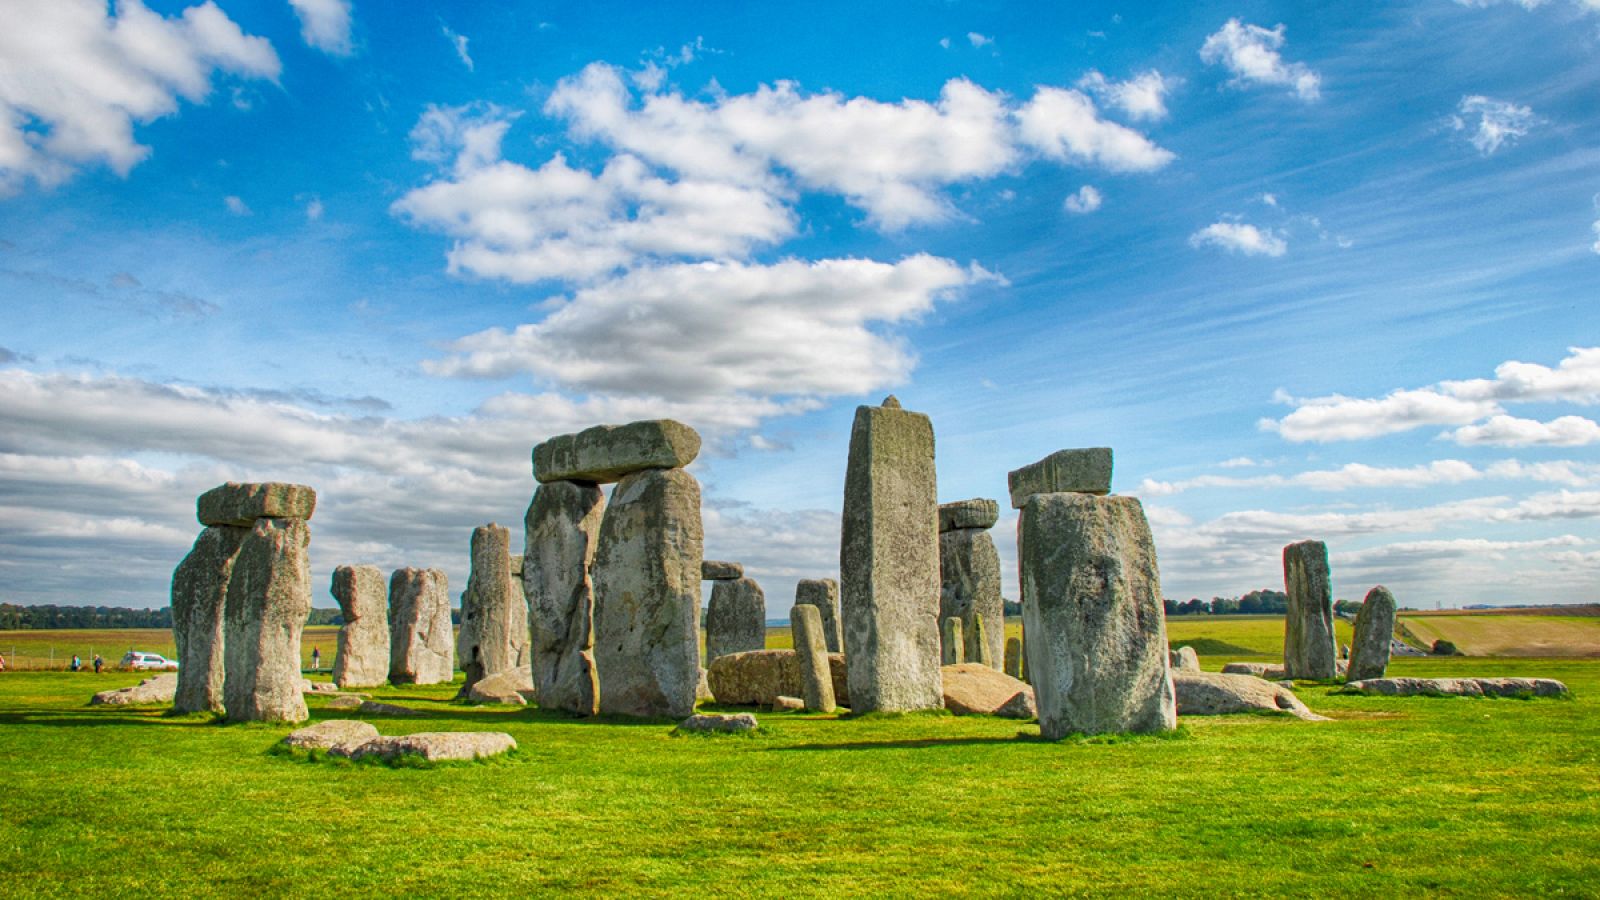 Imagen de Stonehenge, monumento megalítico situado en el condado de Wiltshire (Inglaterra).